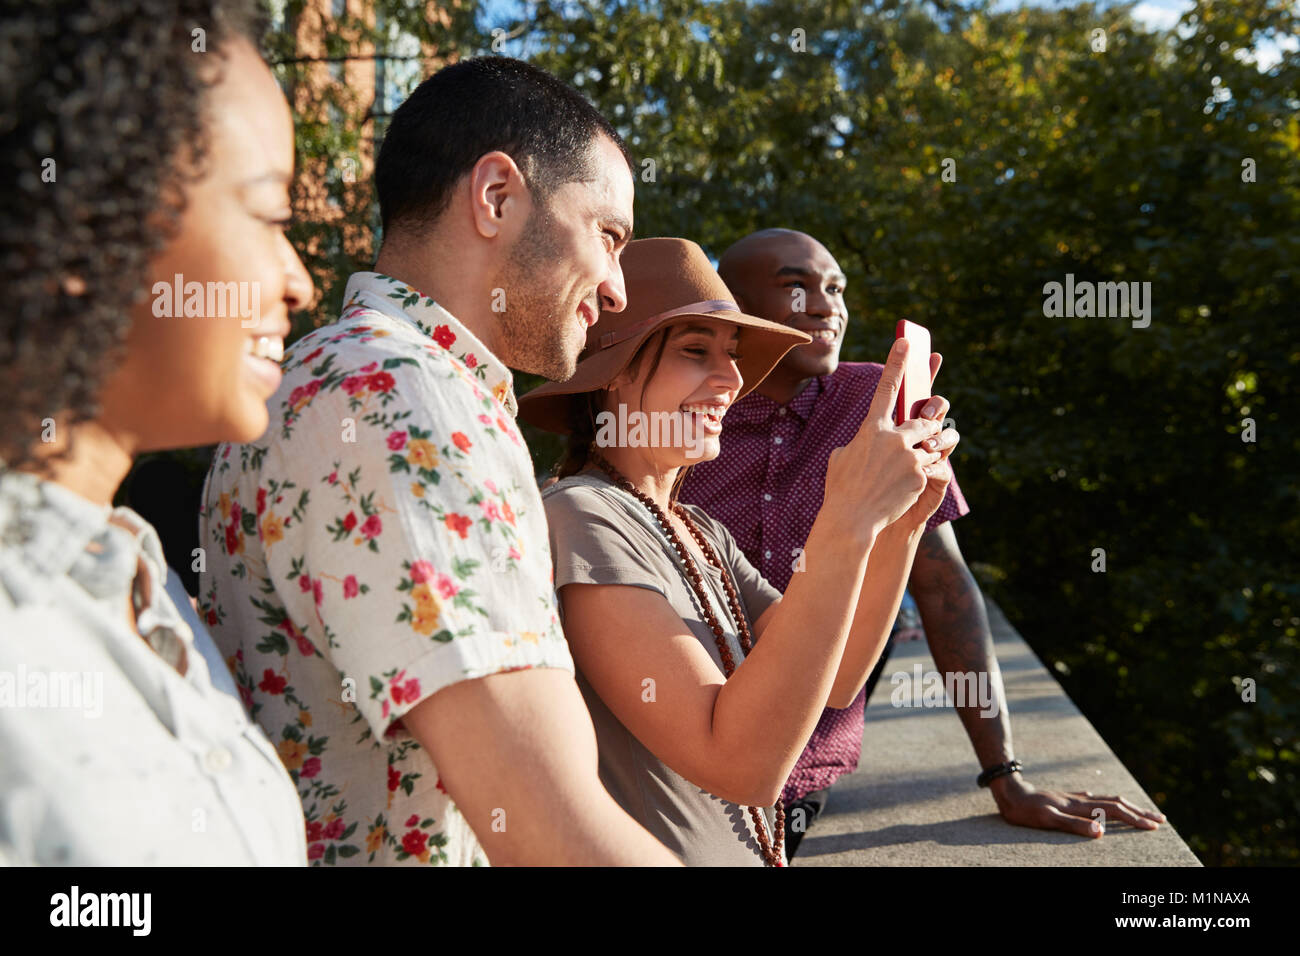 Gruppe von Touristen Fotografieren auf Handys Stockfoto